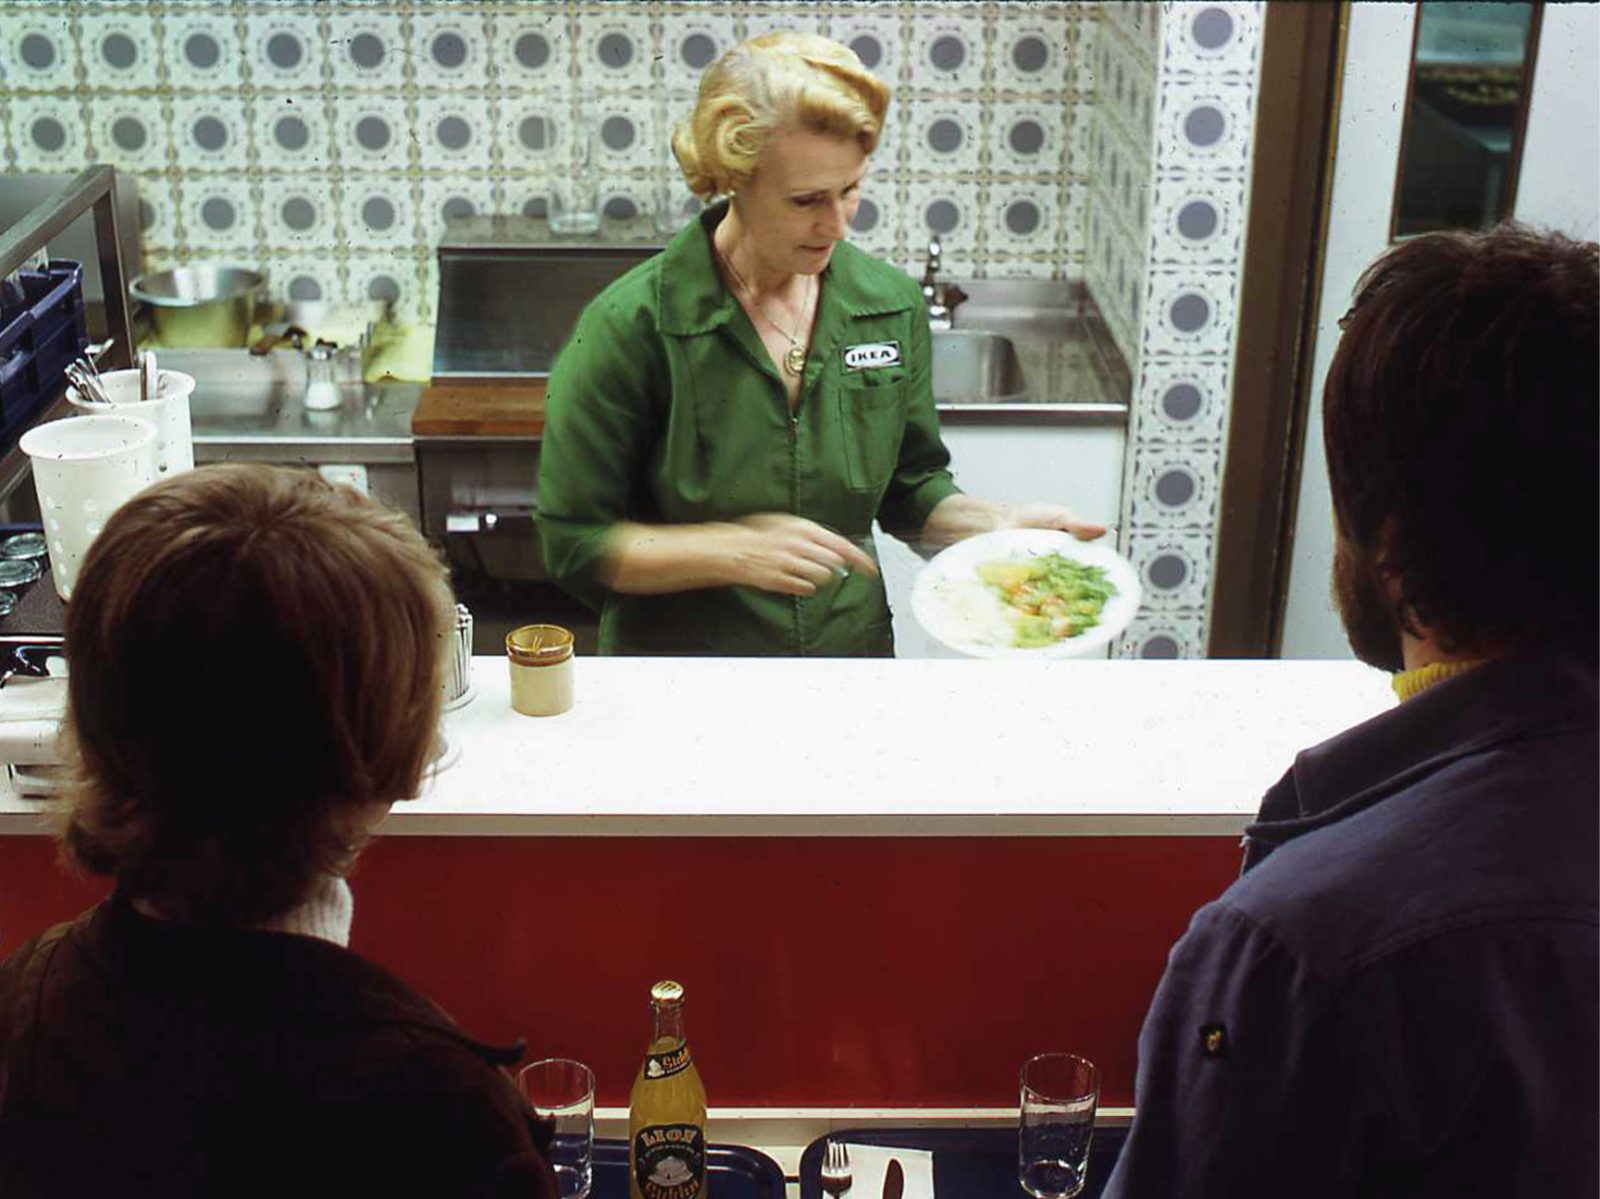 Autoservicio; una pareja espera la comida, preparada por una mujer rubia con uniforme verde de IKEA de los 60.